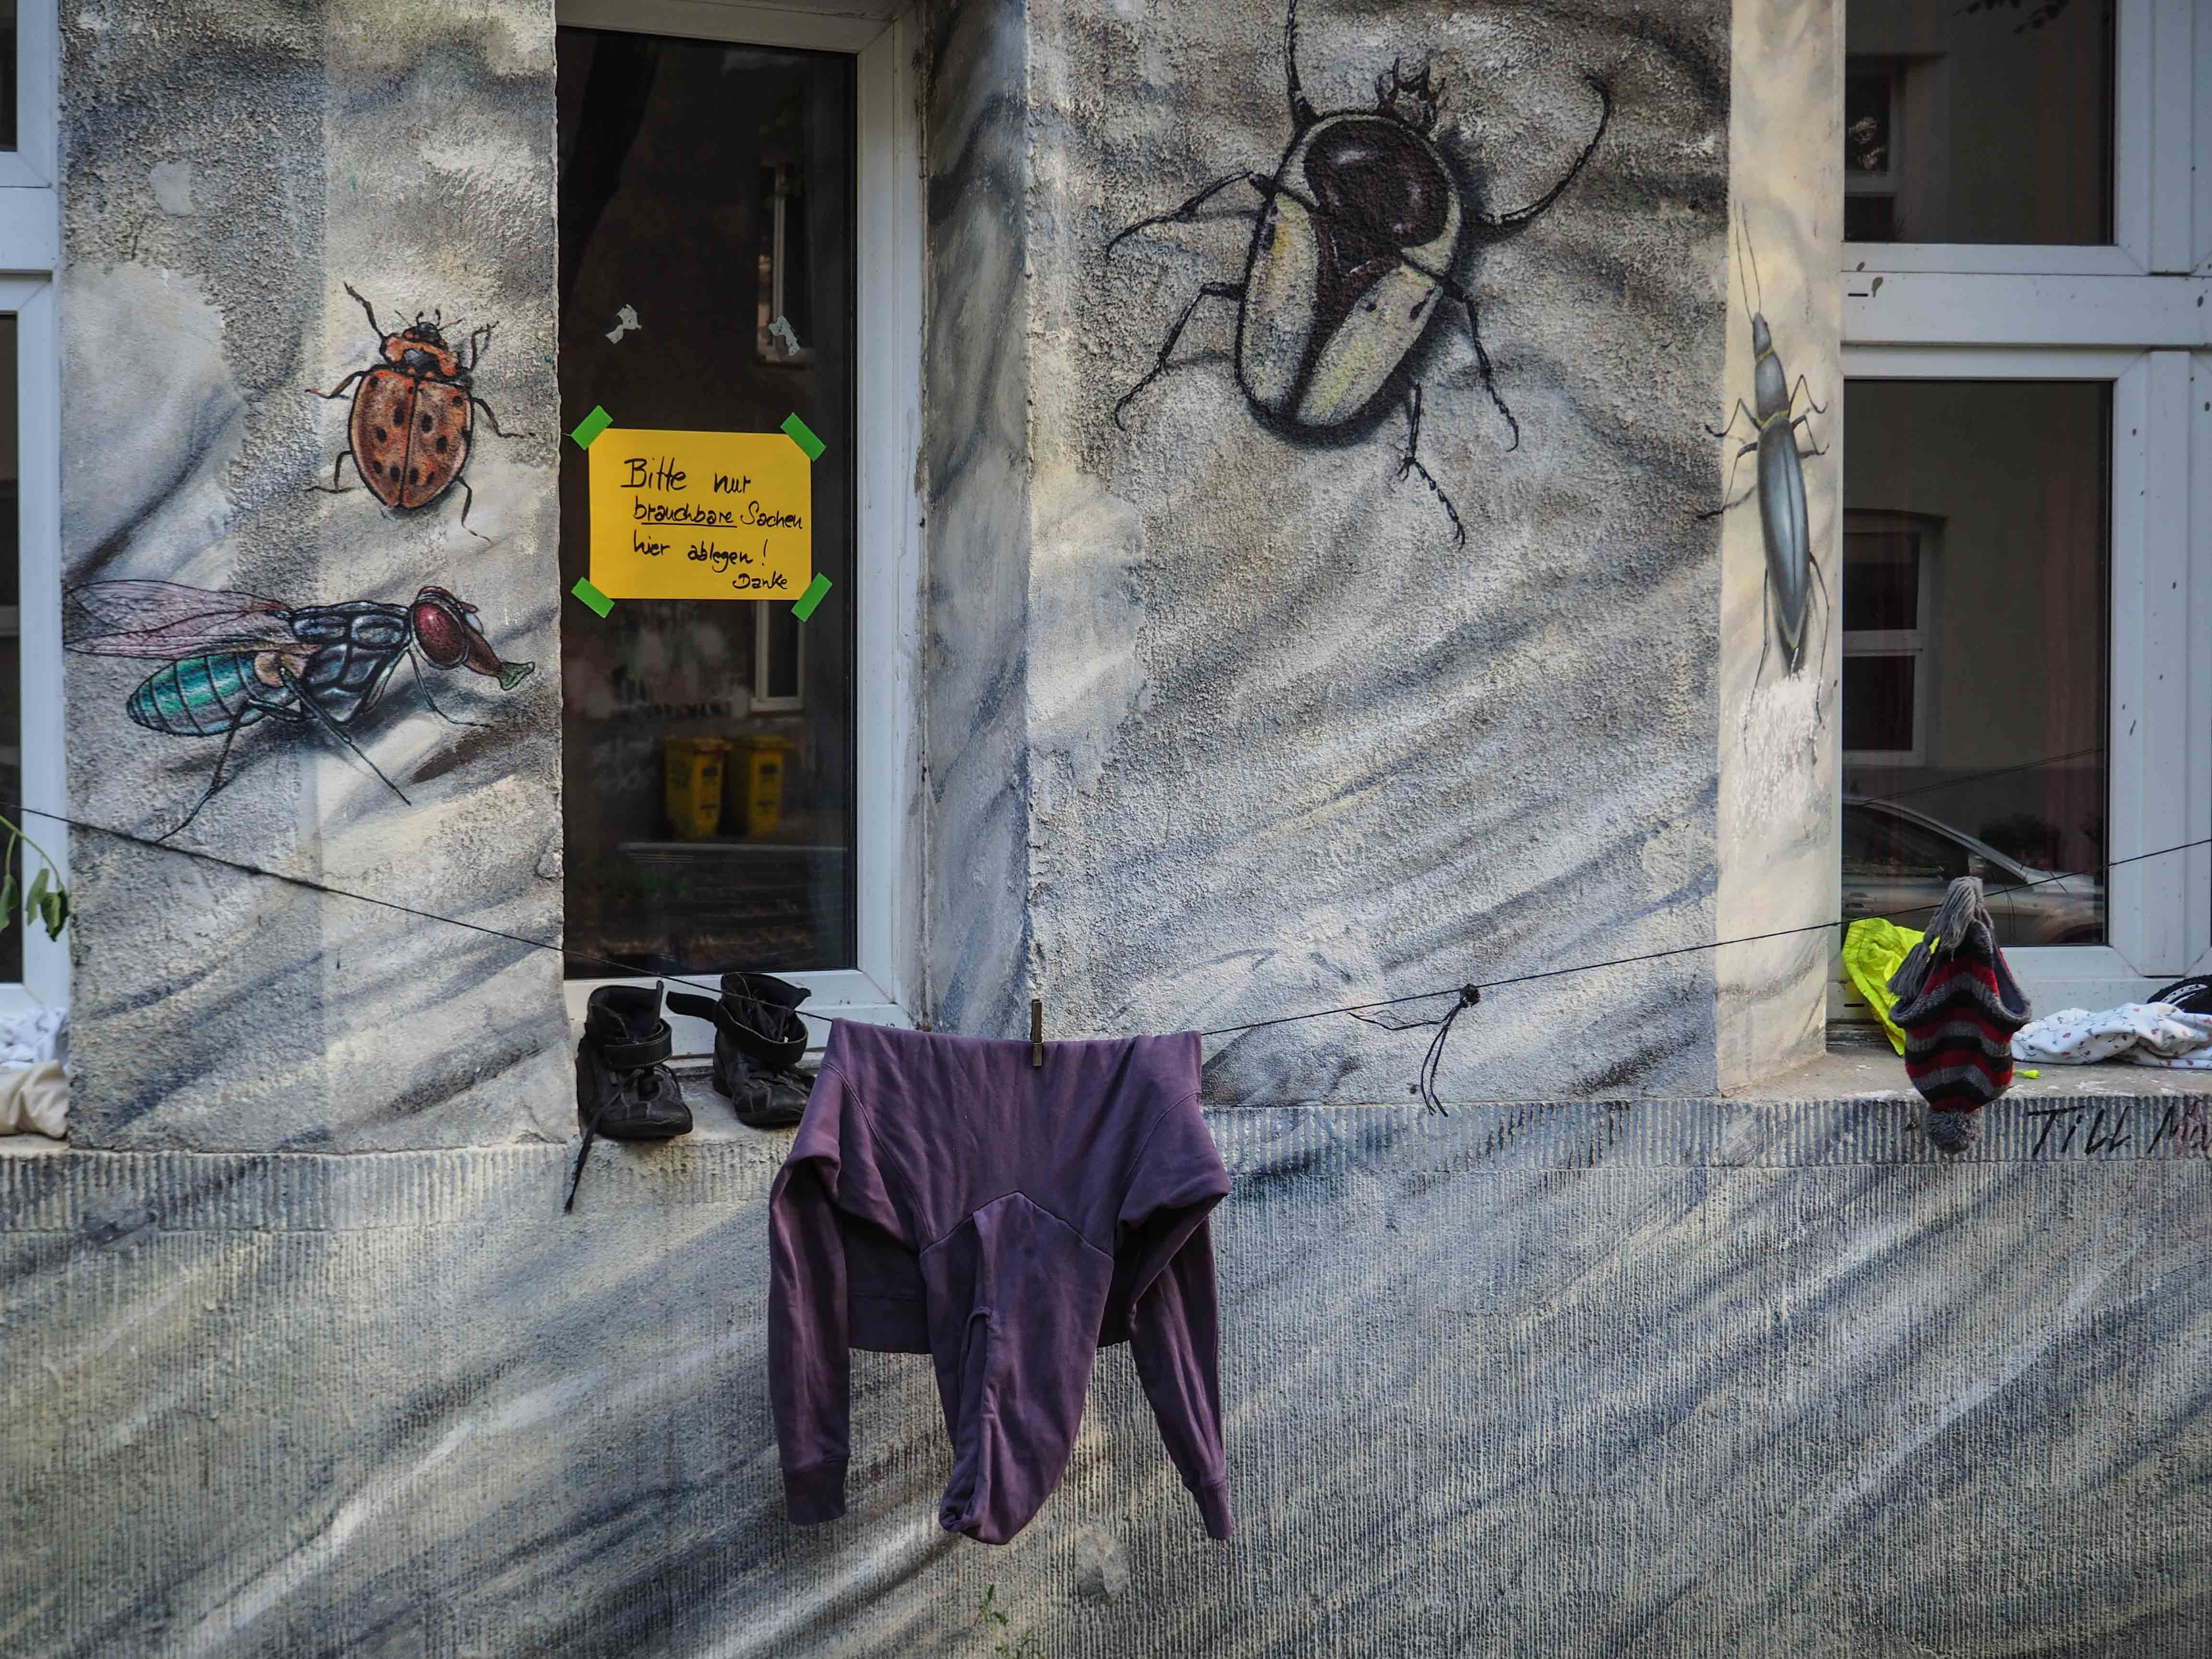 Christian Bolte hat die gesamte Fassade eines Hauses mit Käfern und Insekten bemalt